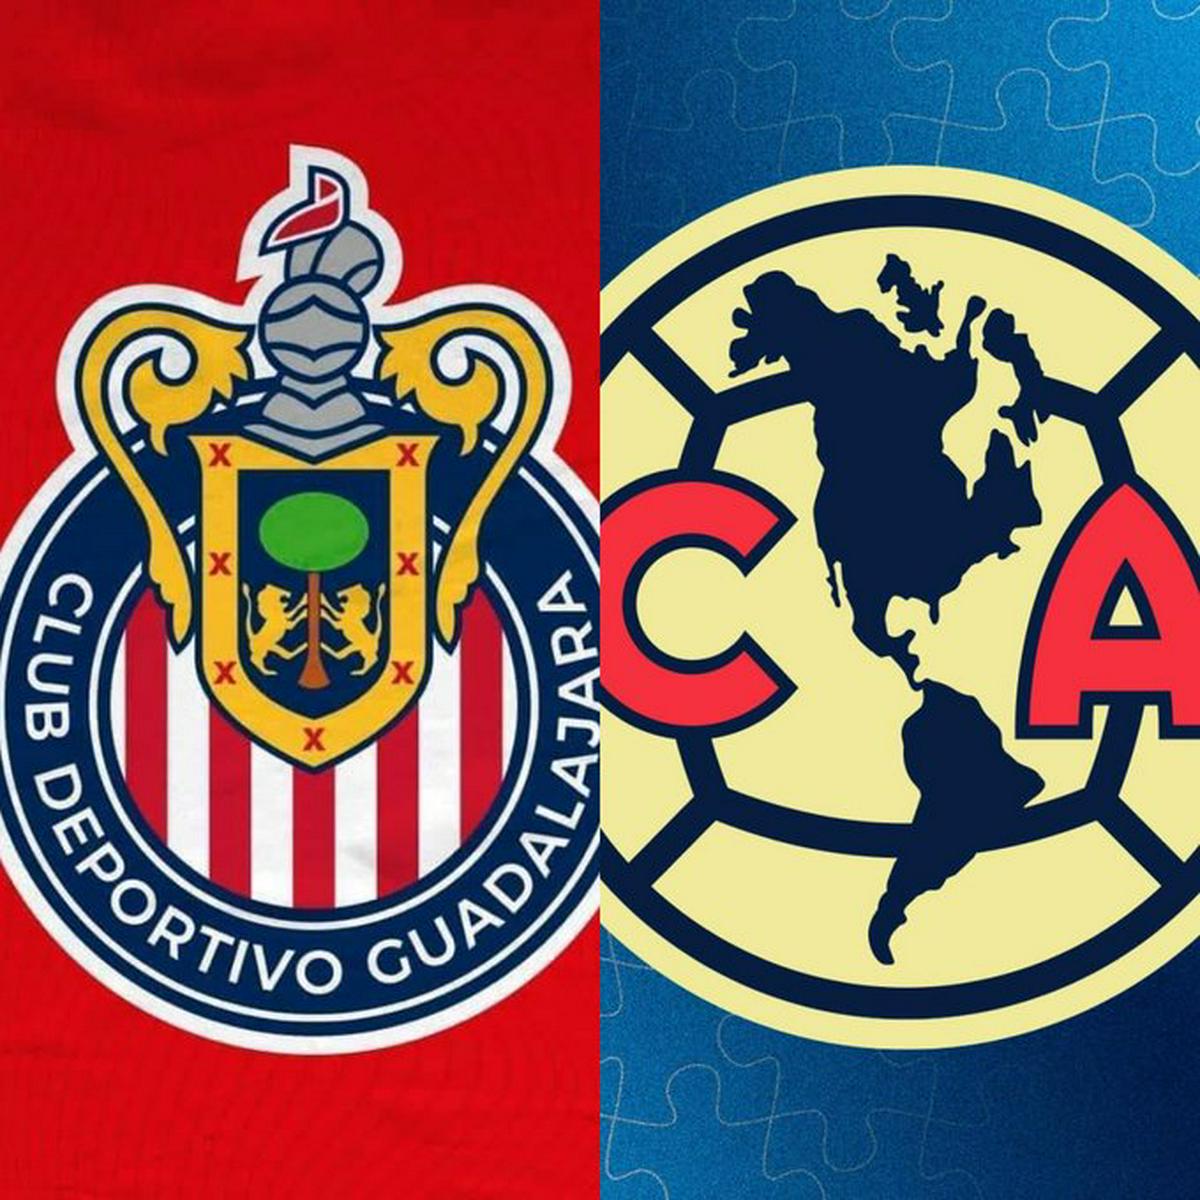 Concacaf tendrá un clasico duelo nacional